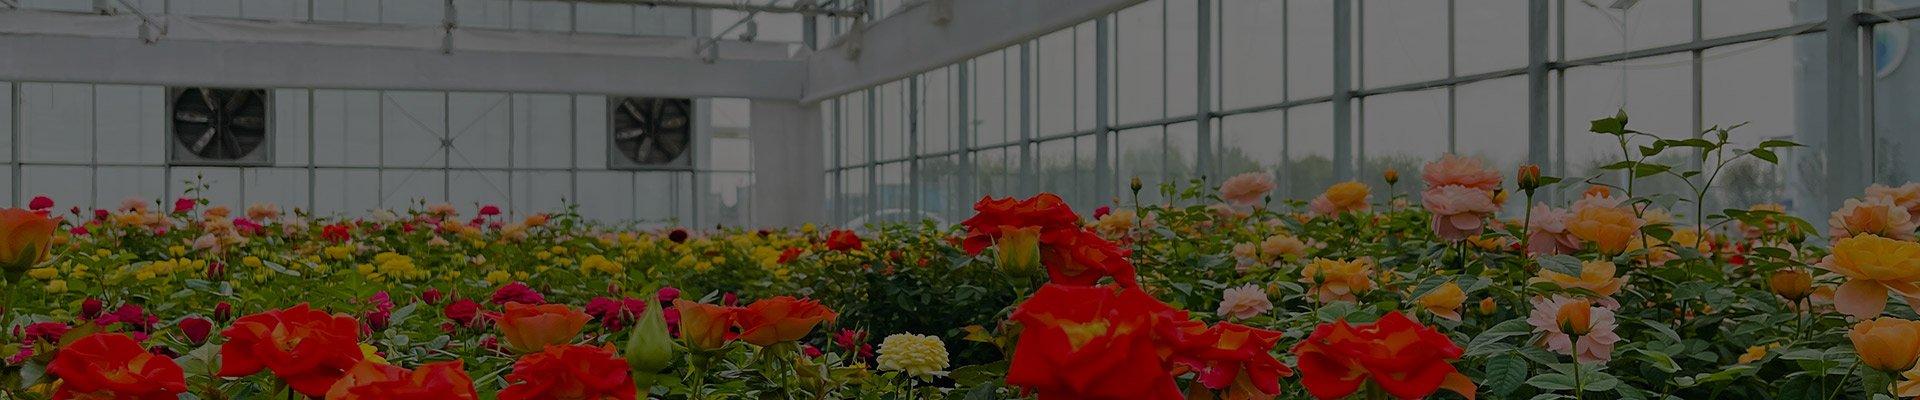 I-flower-greenhouse-bg